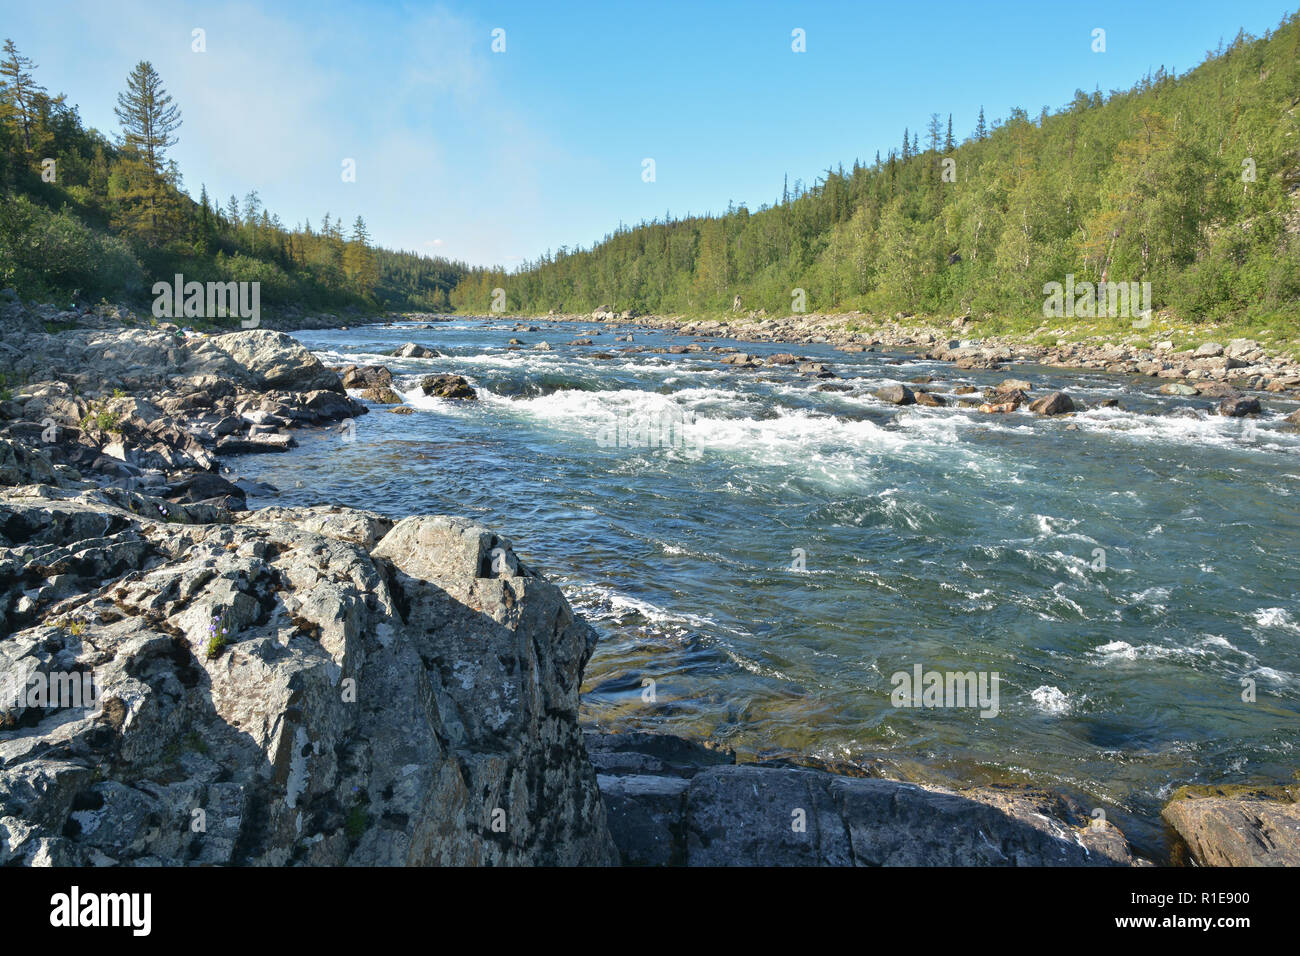 Sur le seuil de la rivière La rivière de la taïga. L'eau d'été Rapids dans le paysage de l'Oural polaire. Banque D'Images